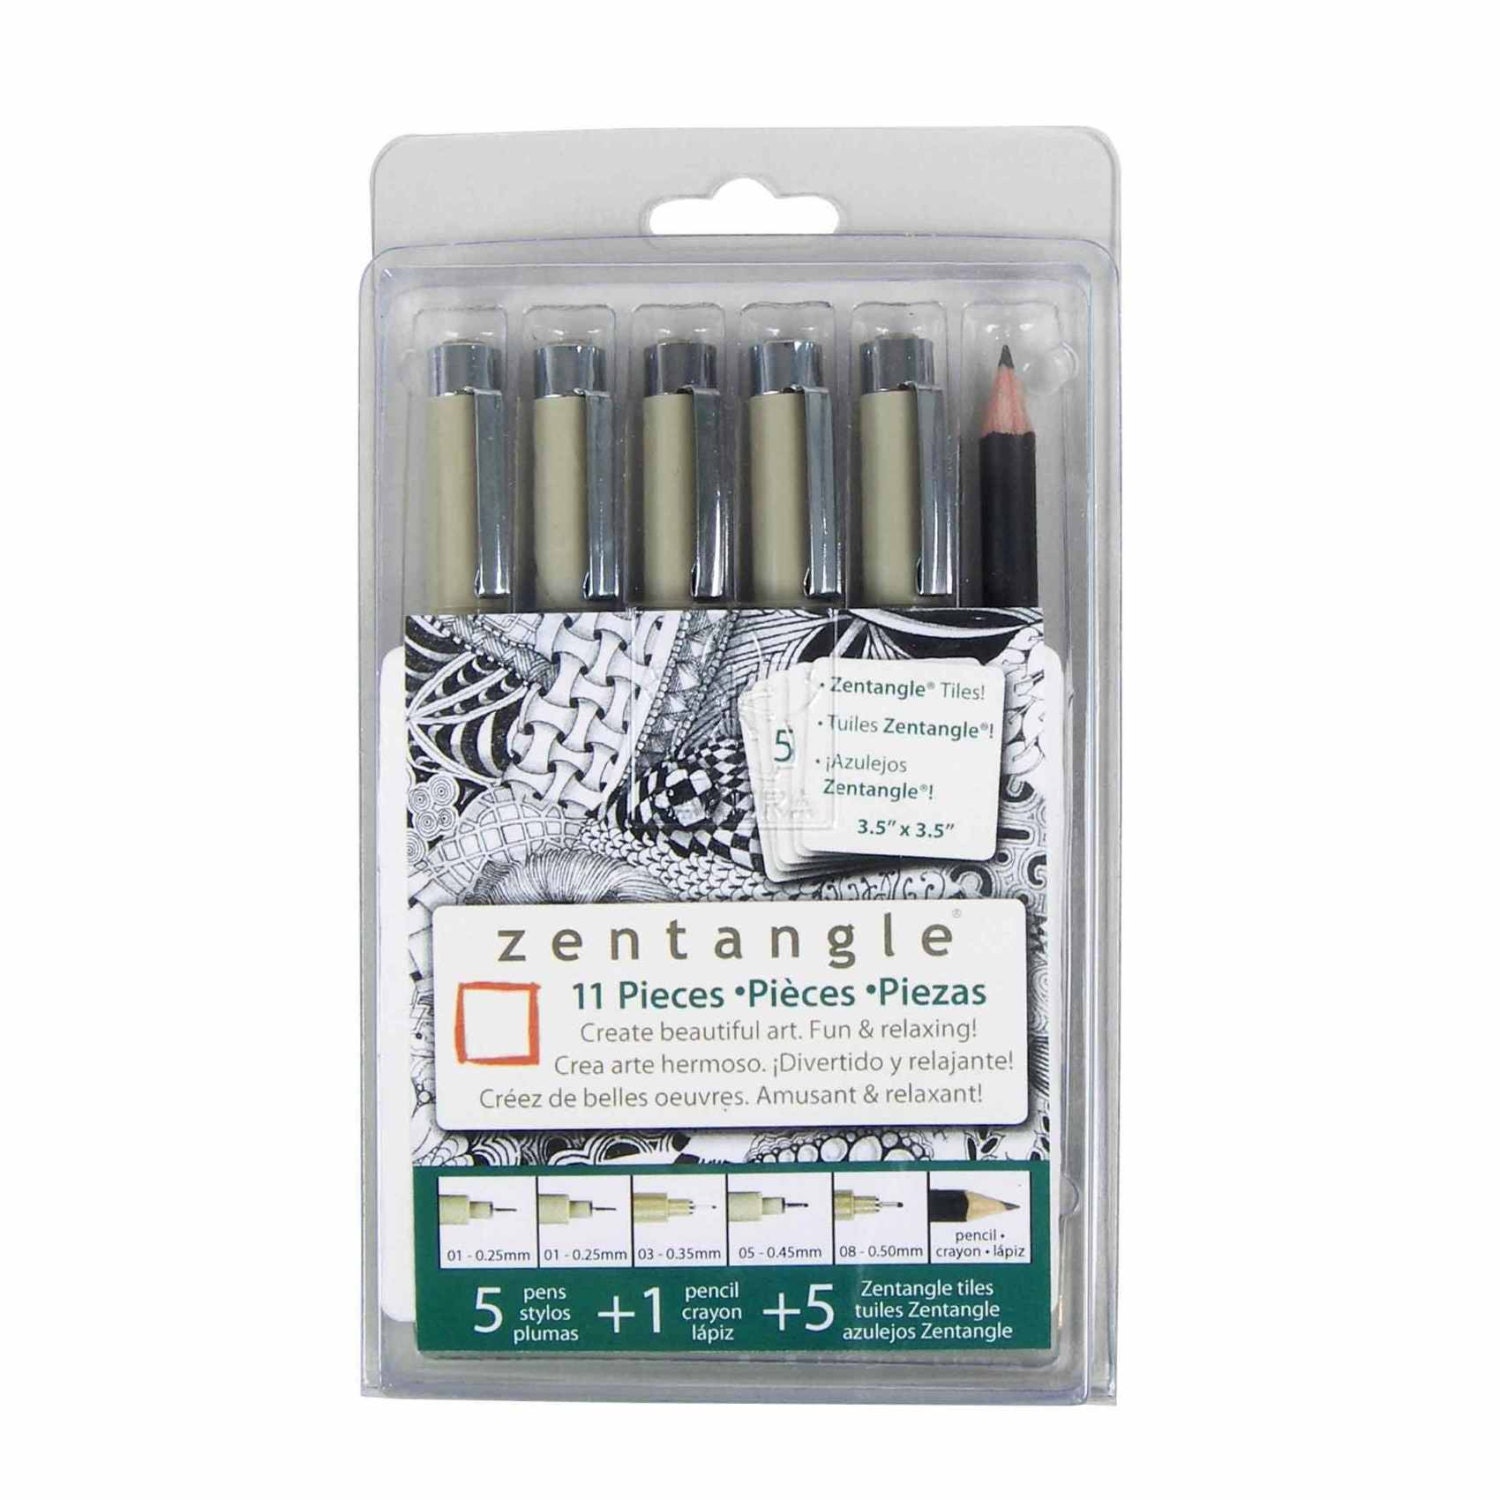 Sakura Pens, Markers; Sakura Zentangle 11 Pens, Pencil Clamshell Set; Great  for Coloring, Bible Study Pens, Inductive Bible Study